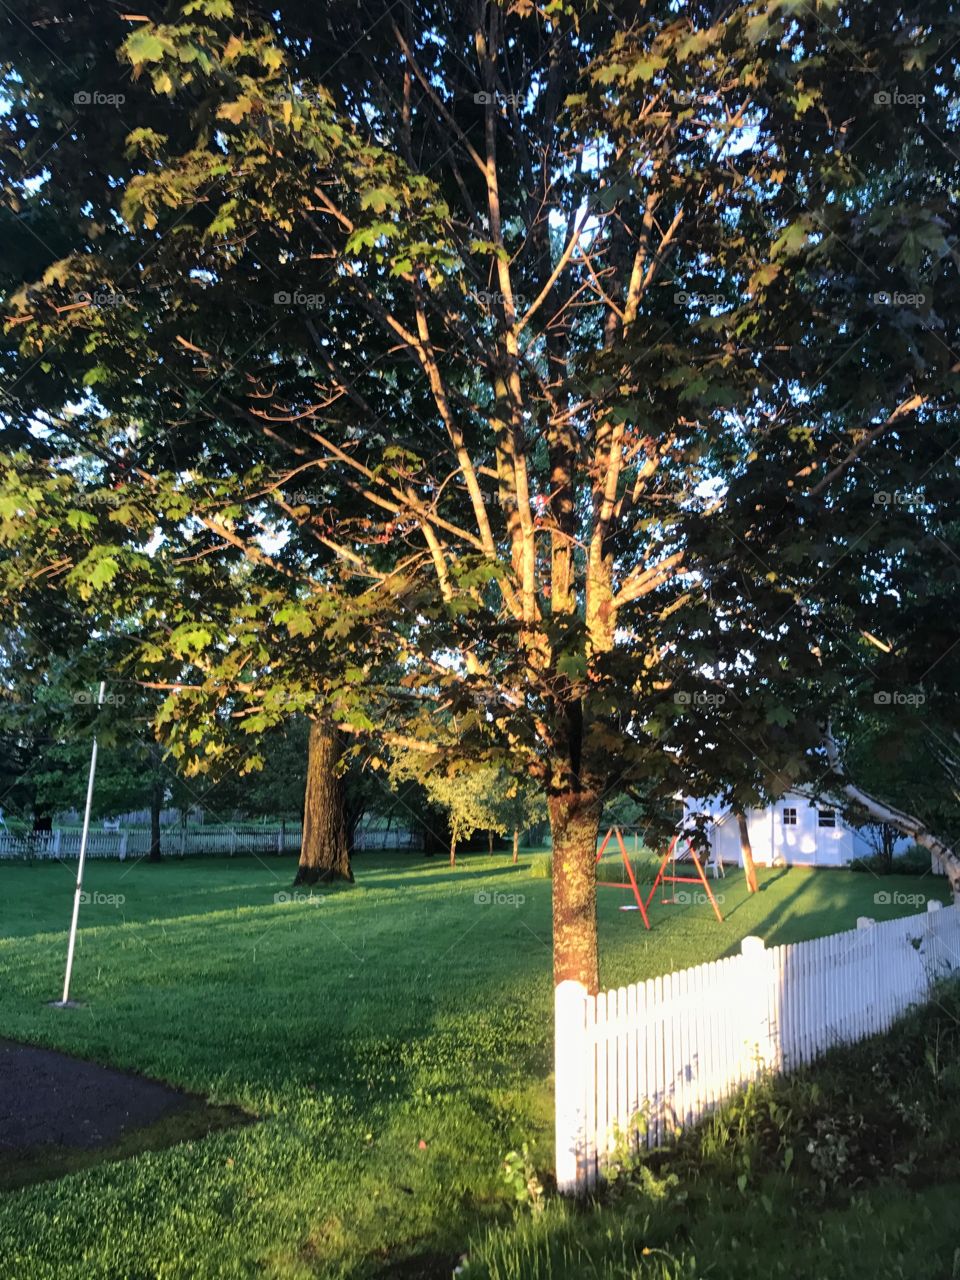 Tree, No Person, Landscape, Leaf, Park